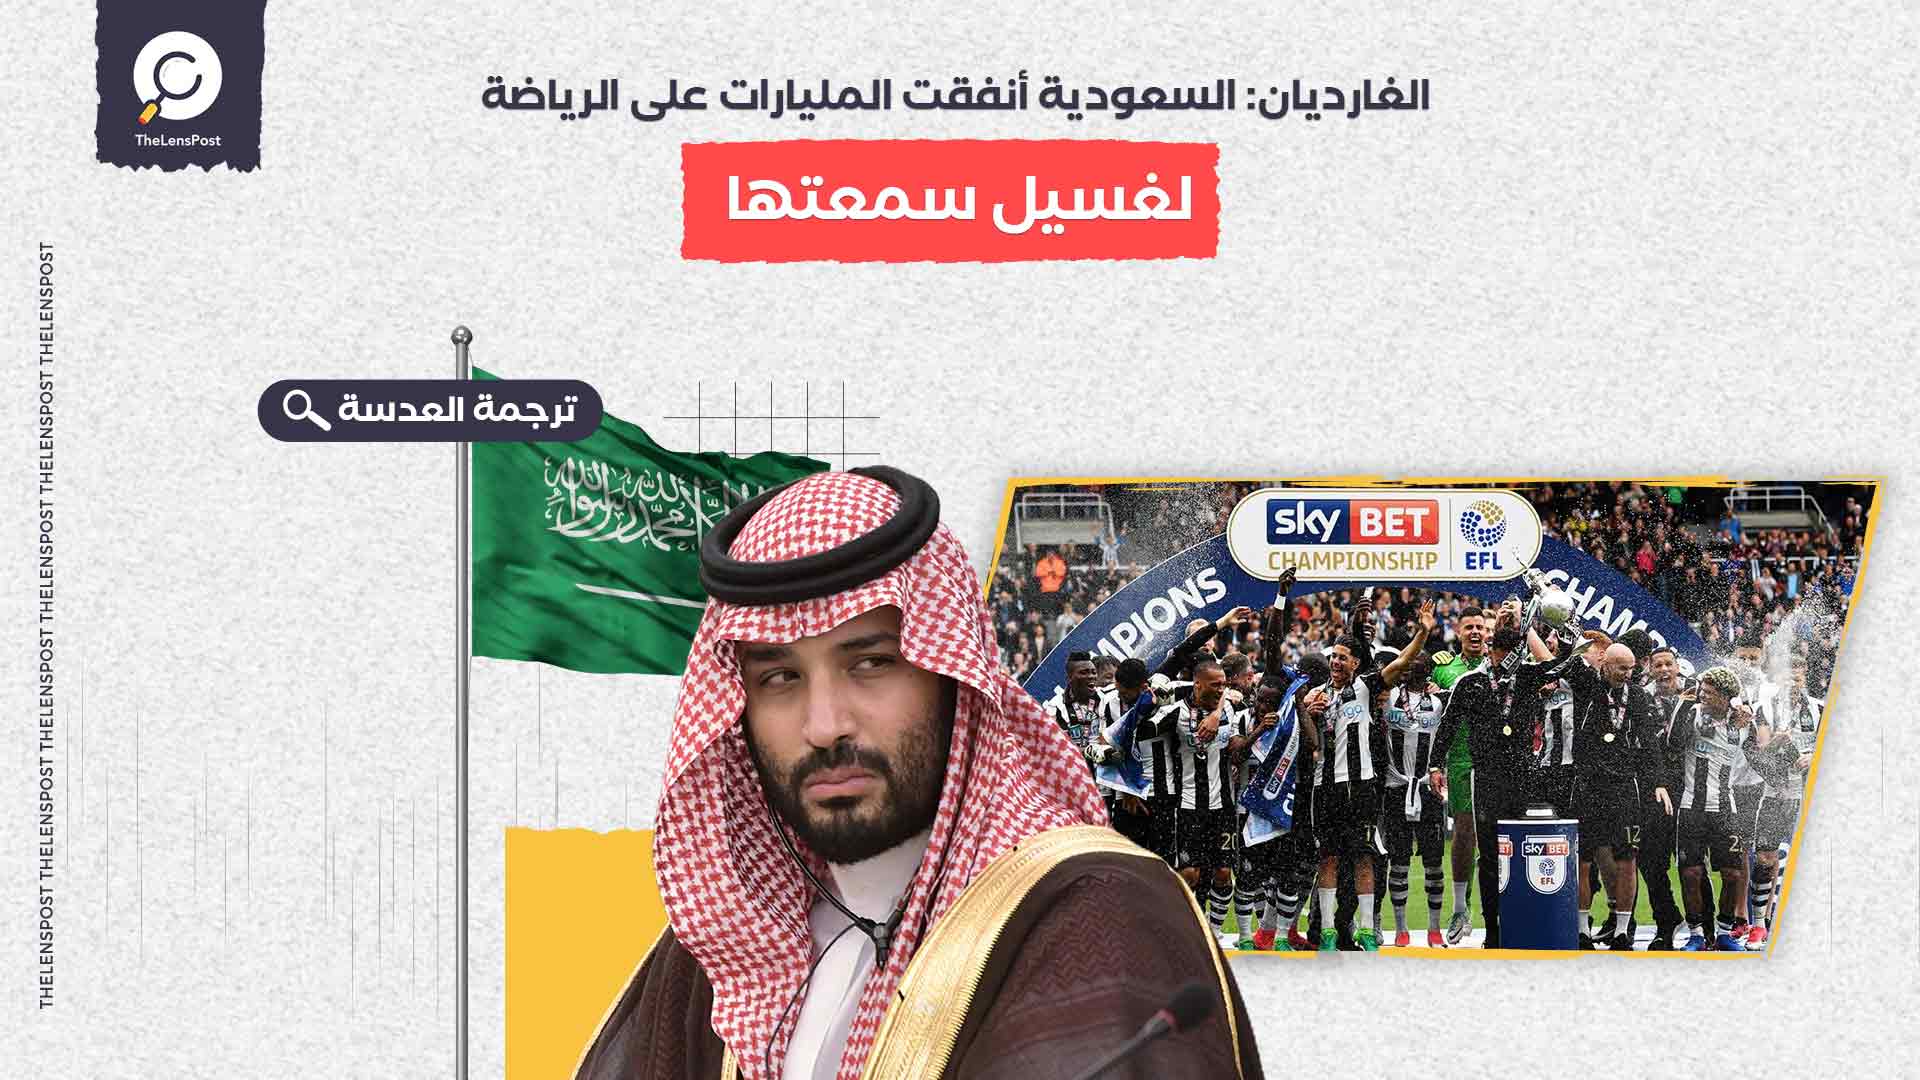 الغارديان: السعودية أنفقت المليارات على الرياضة لغسيل سمعتها 